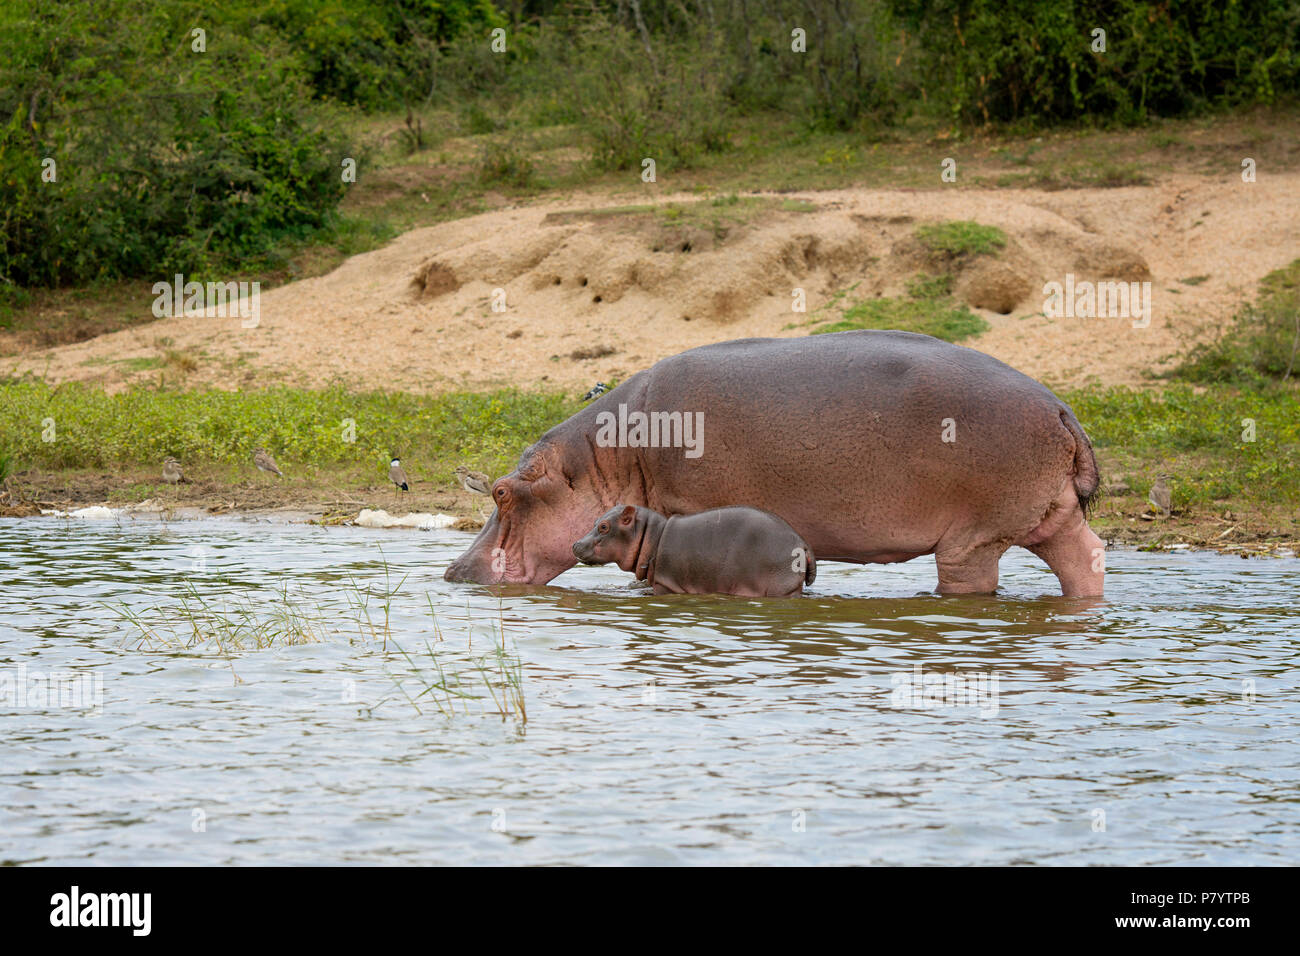 L'hippopotame, Hippopotamus amphibius, Canal Kazinga, Ouganda Afrique de l'Est Banque D'Images